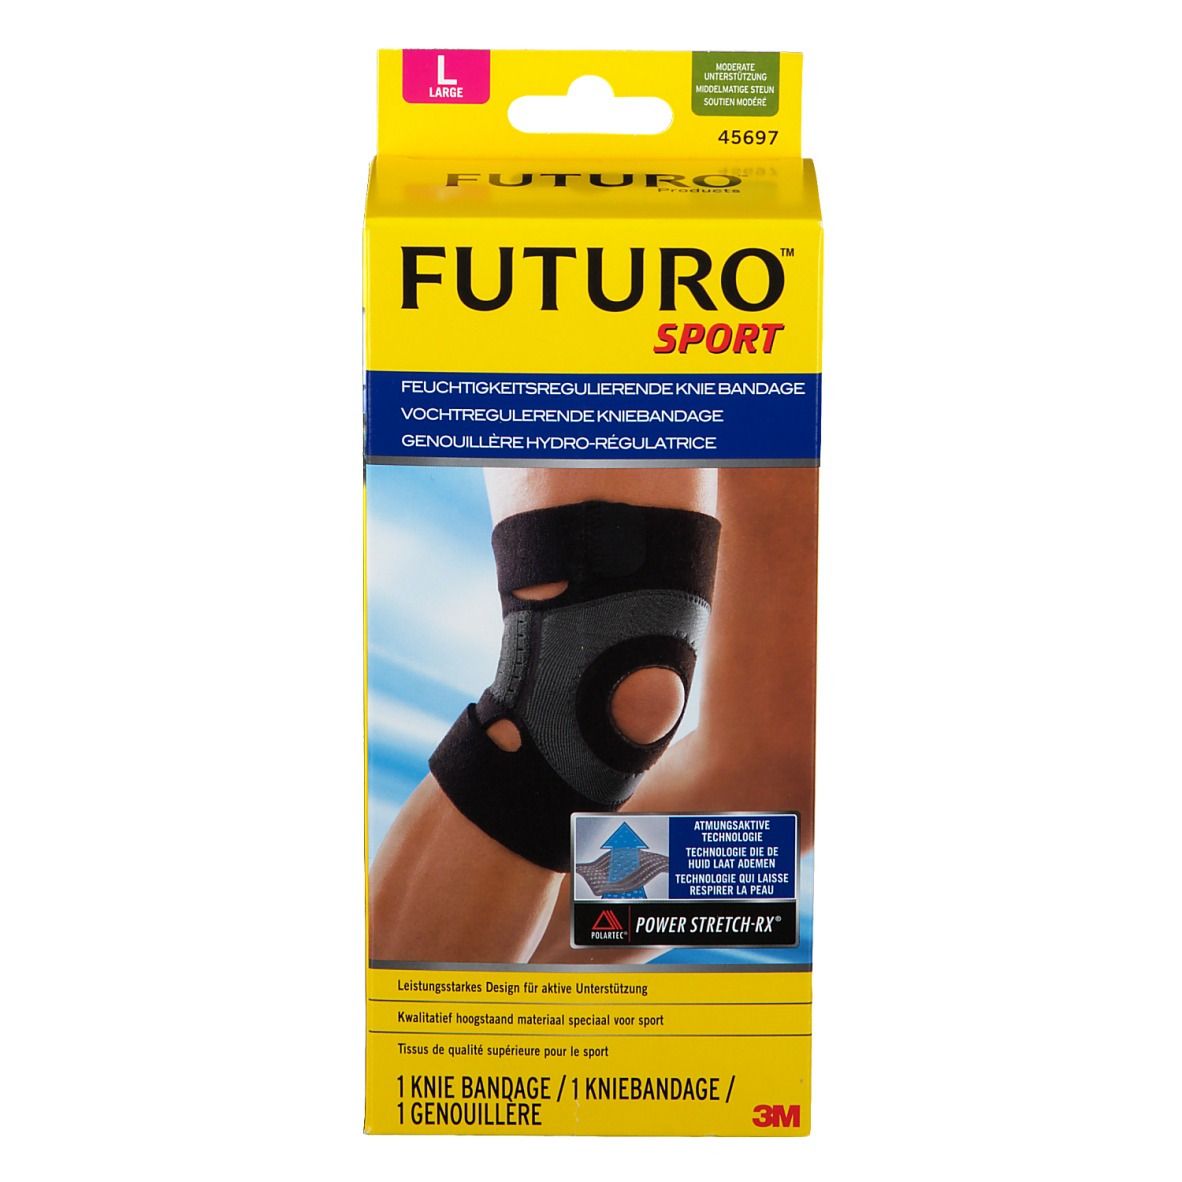 FUTURO™ Sport feuchtigkeitsregulierende Knie Bandage L